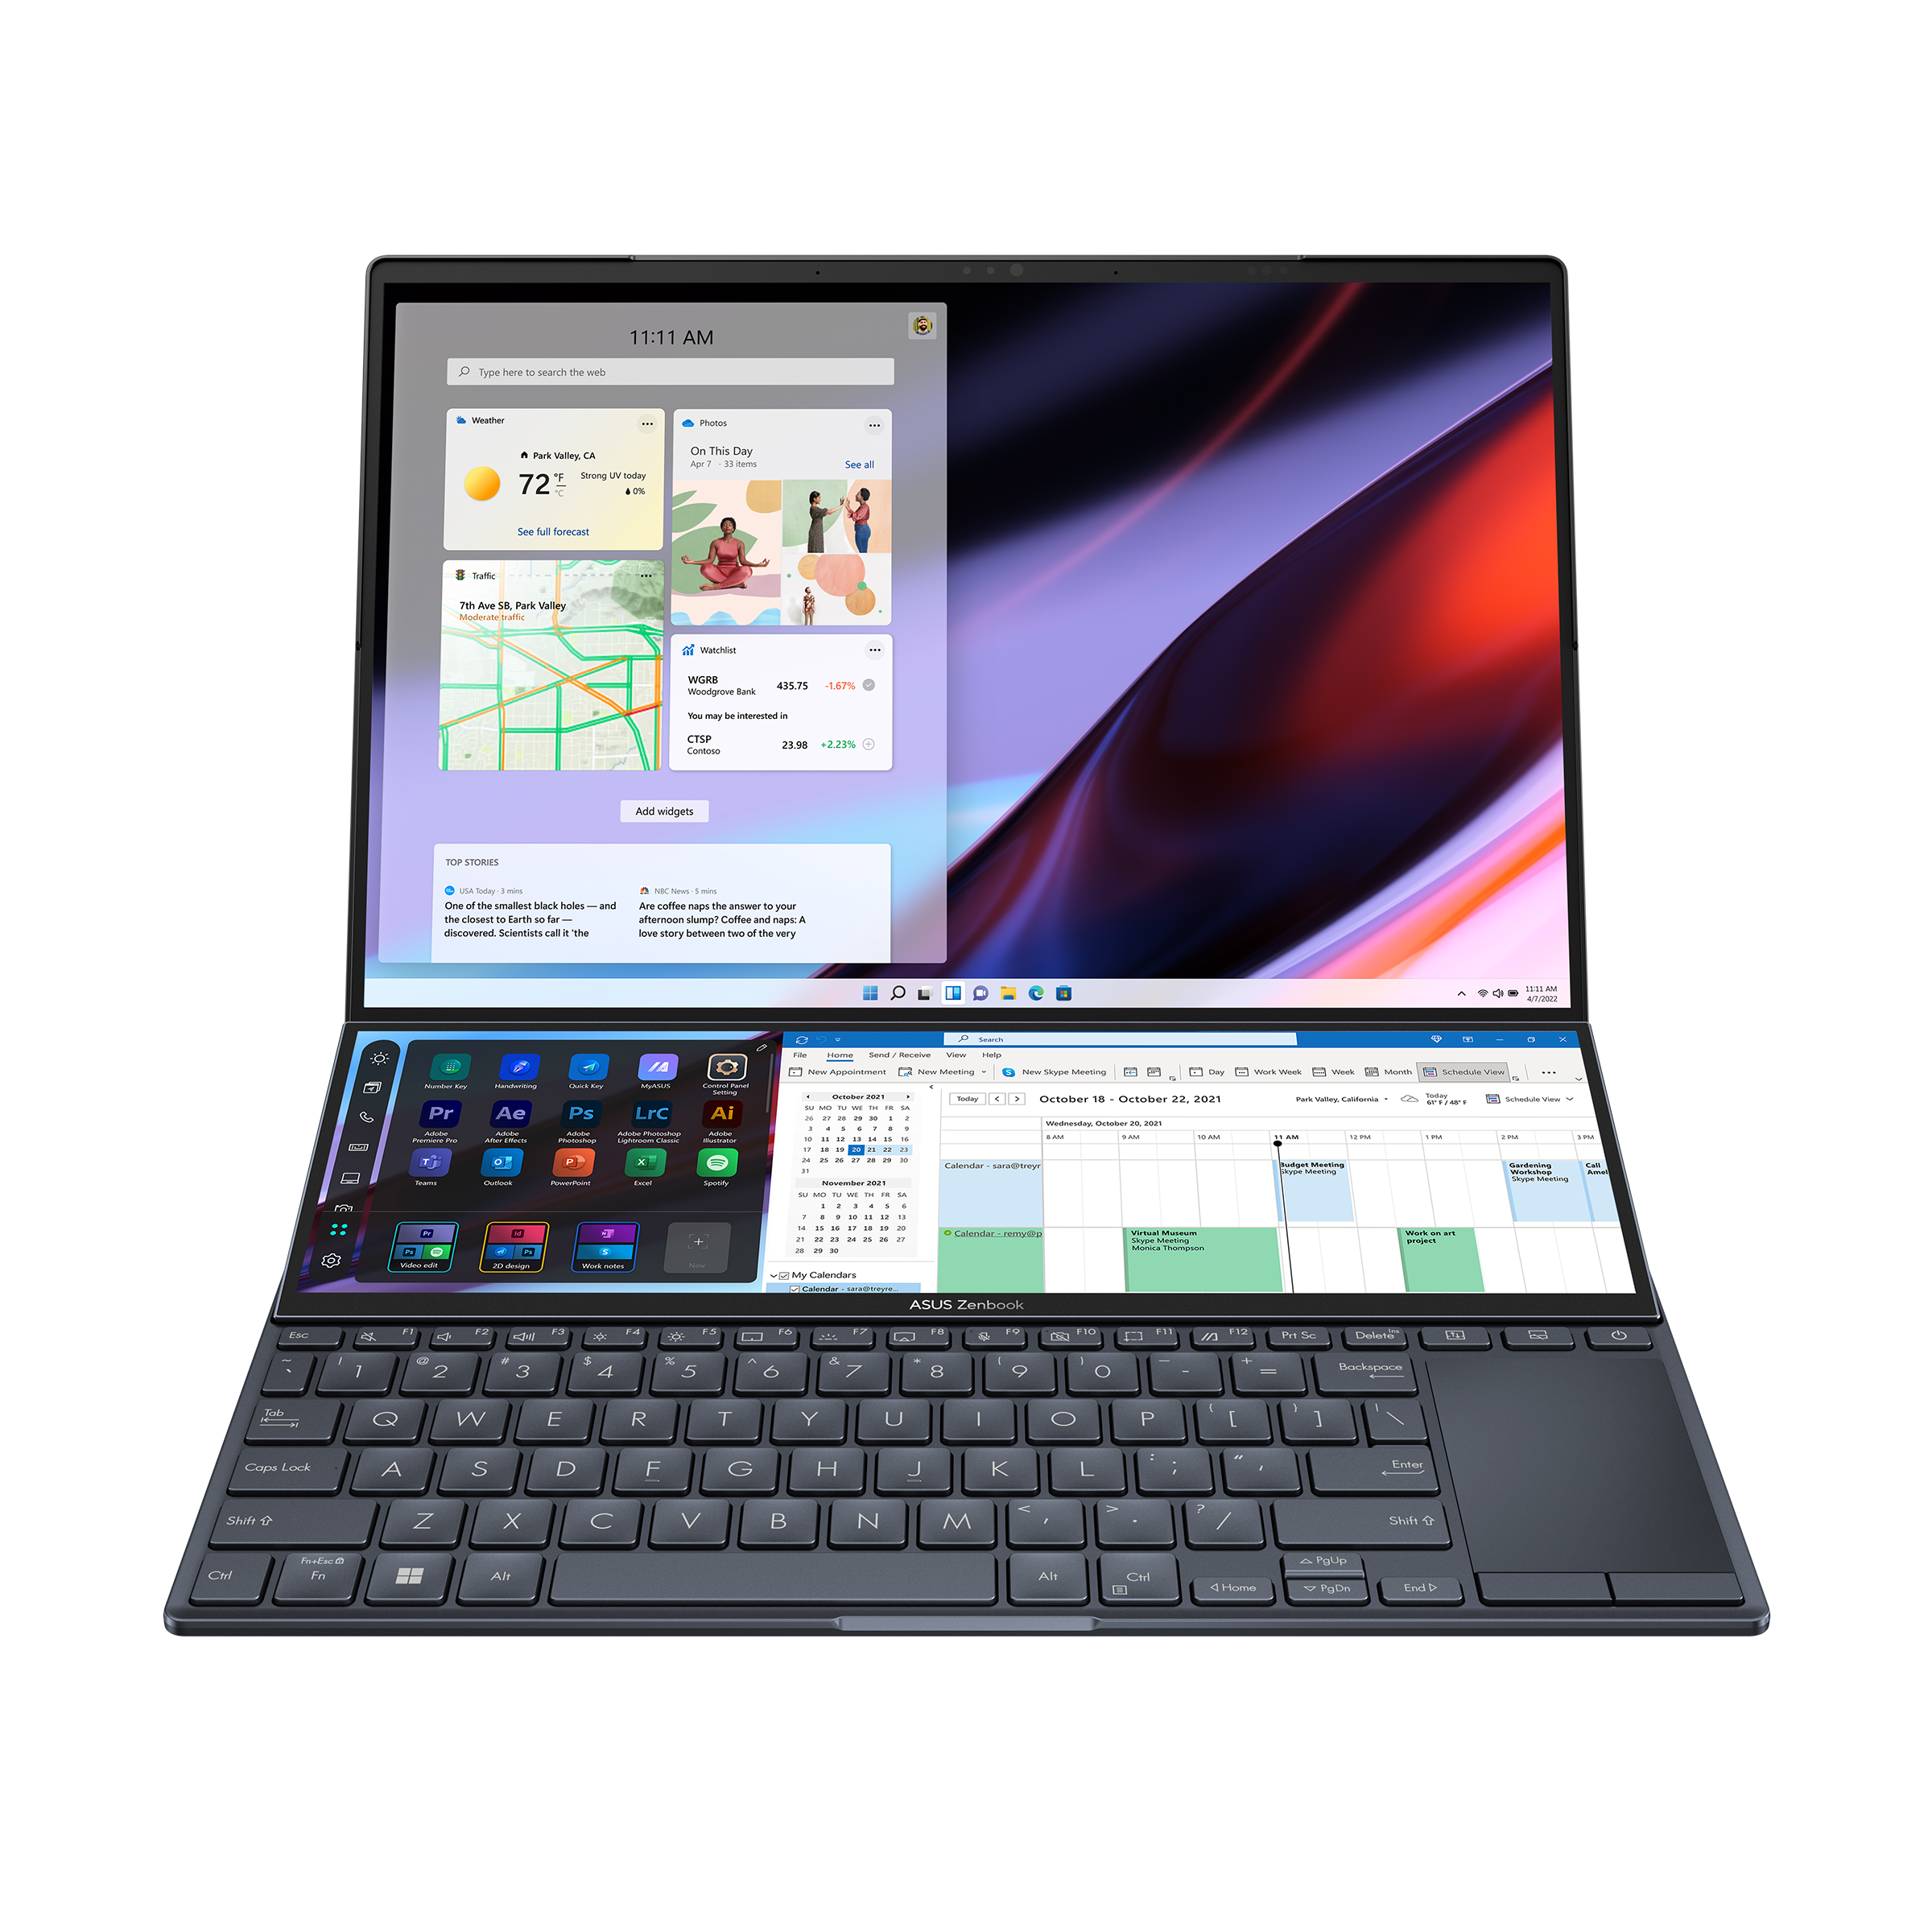 Zenbook Pro 14 Duo OLED (UX8402, 12th Gen Intel)